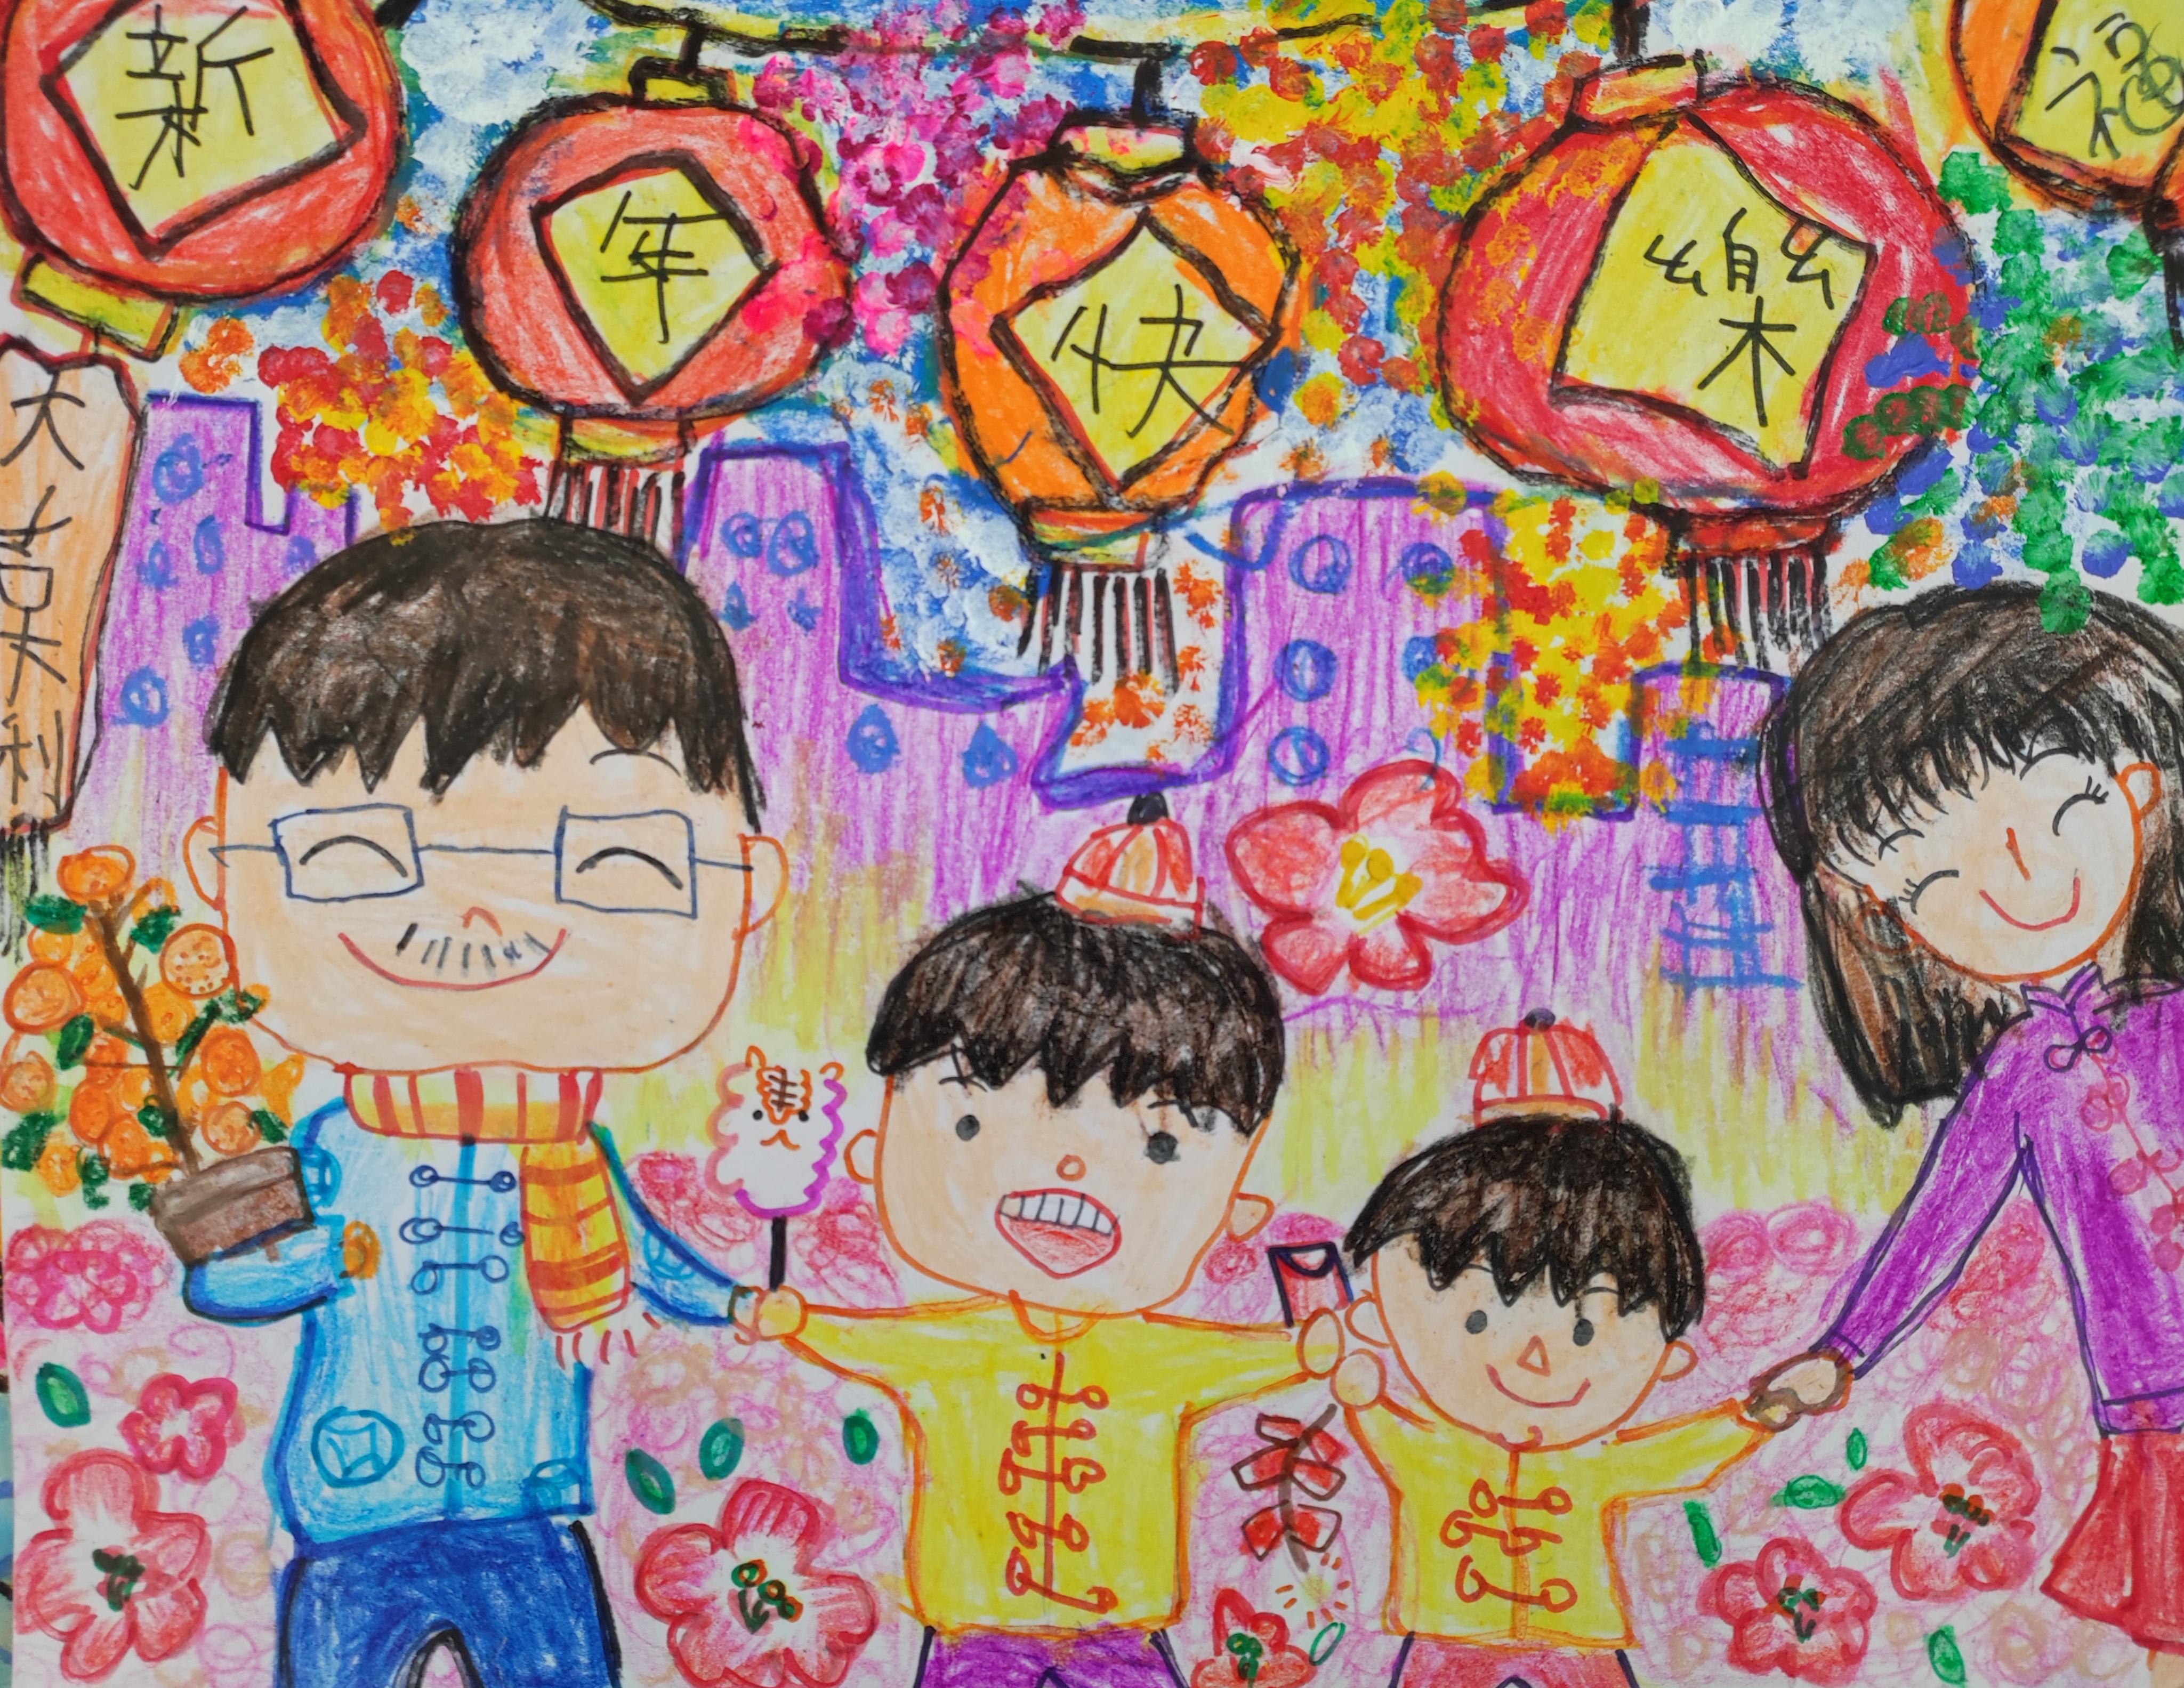 <div>熱鬧新年-幼稚園高級組(K3)-季軍-譚琛</div>
<div>作品除了以家人作主題外，還使用了繁華的城市作點綴，也表現到香港都是林立的感覺，出來的效果十分貼題。</div>